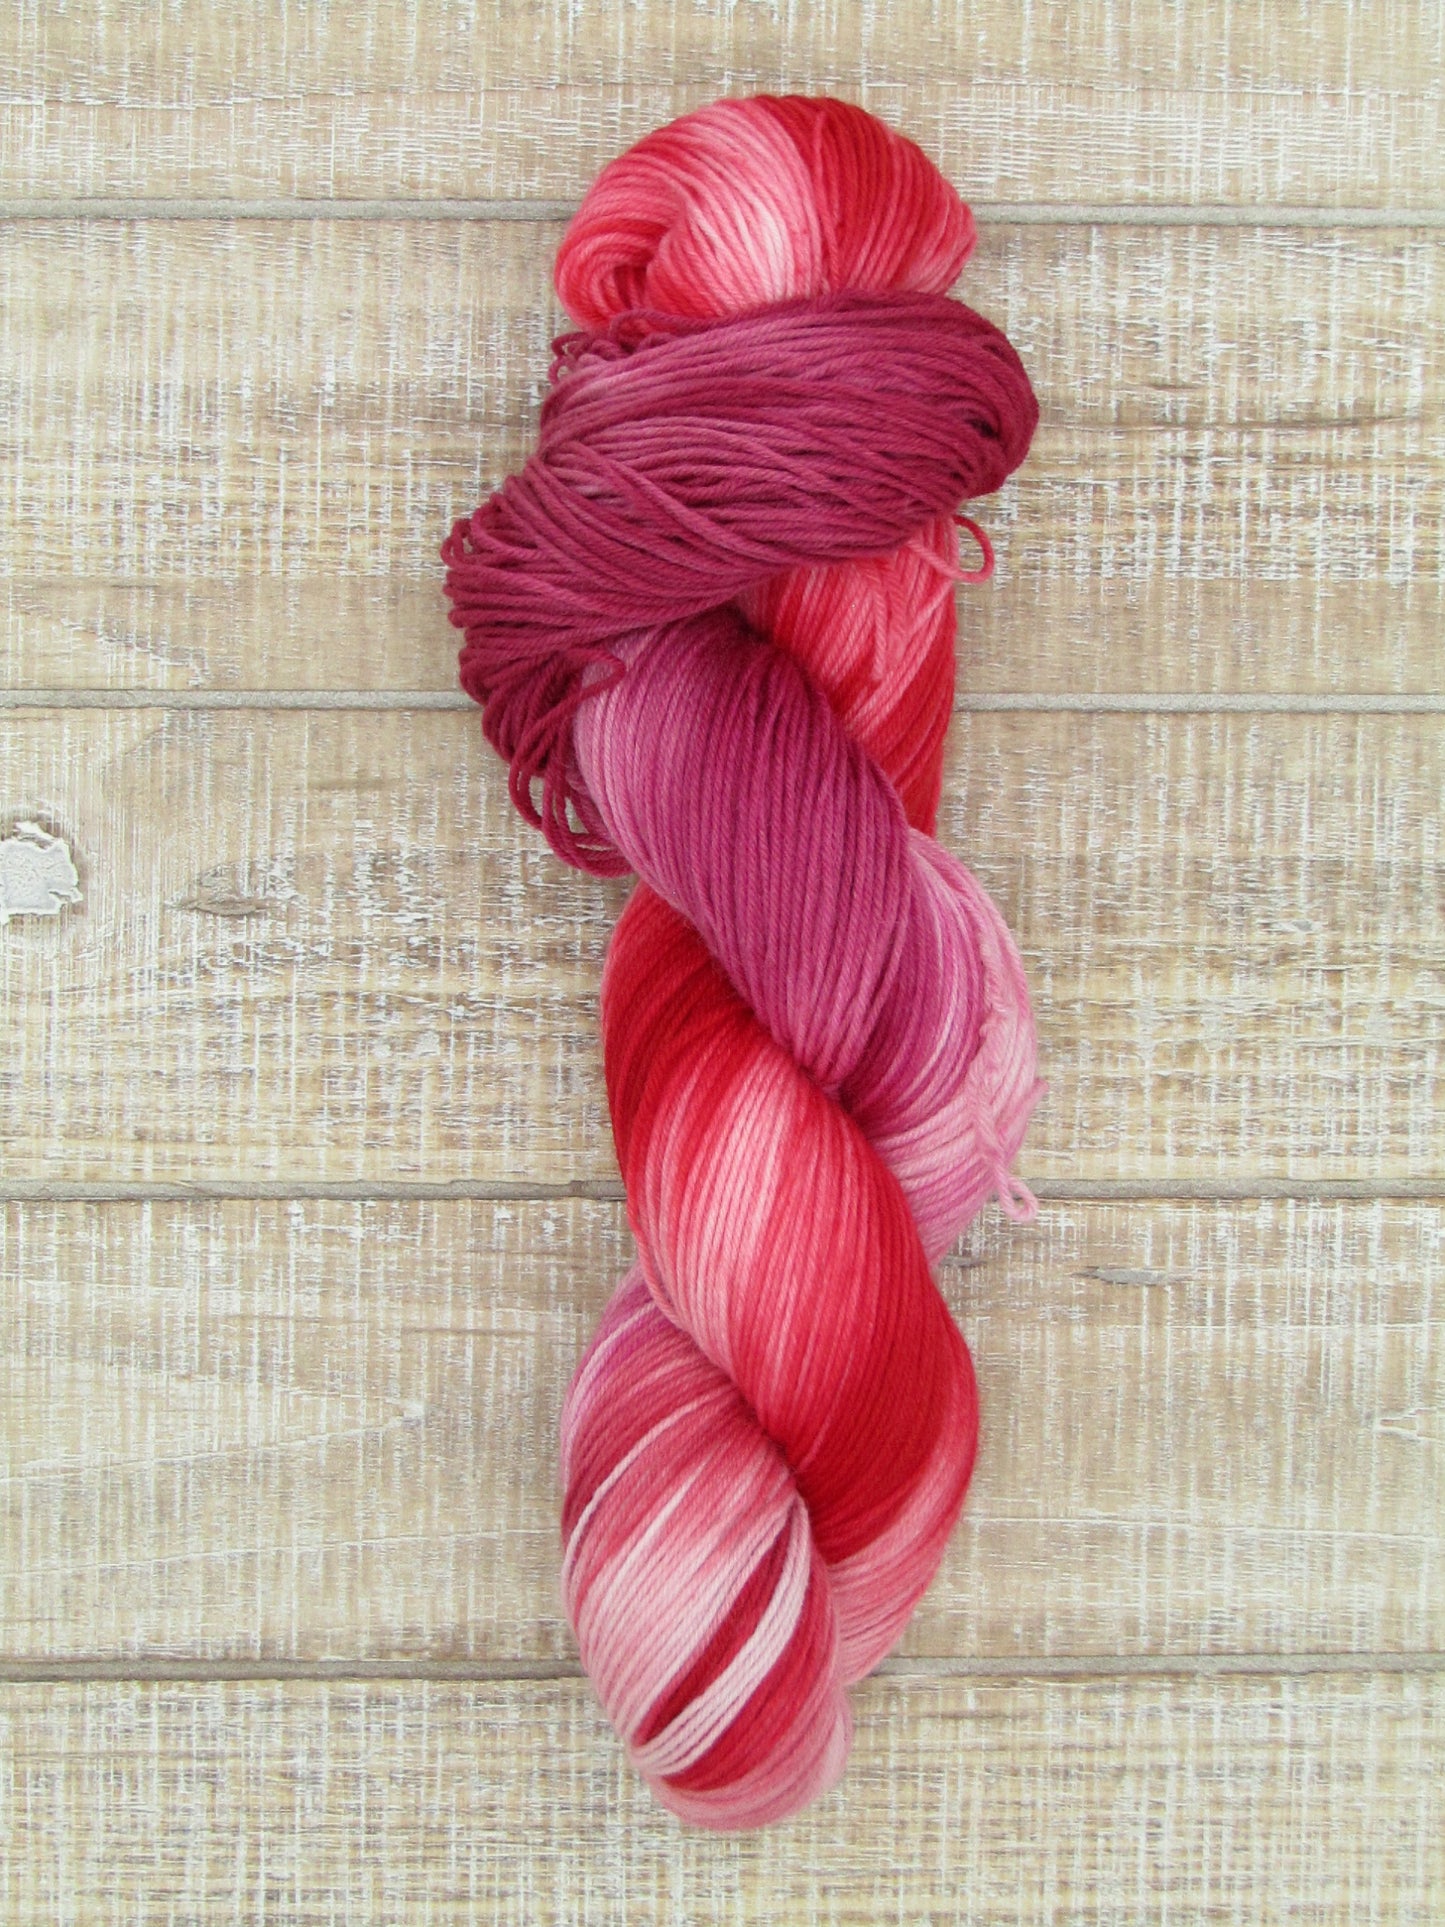 Hand-Dyed Yarn Superwash Merino/Nylon Sock Weight Delilah